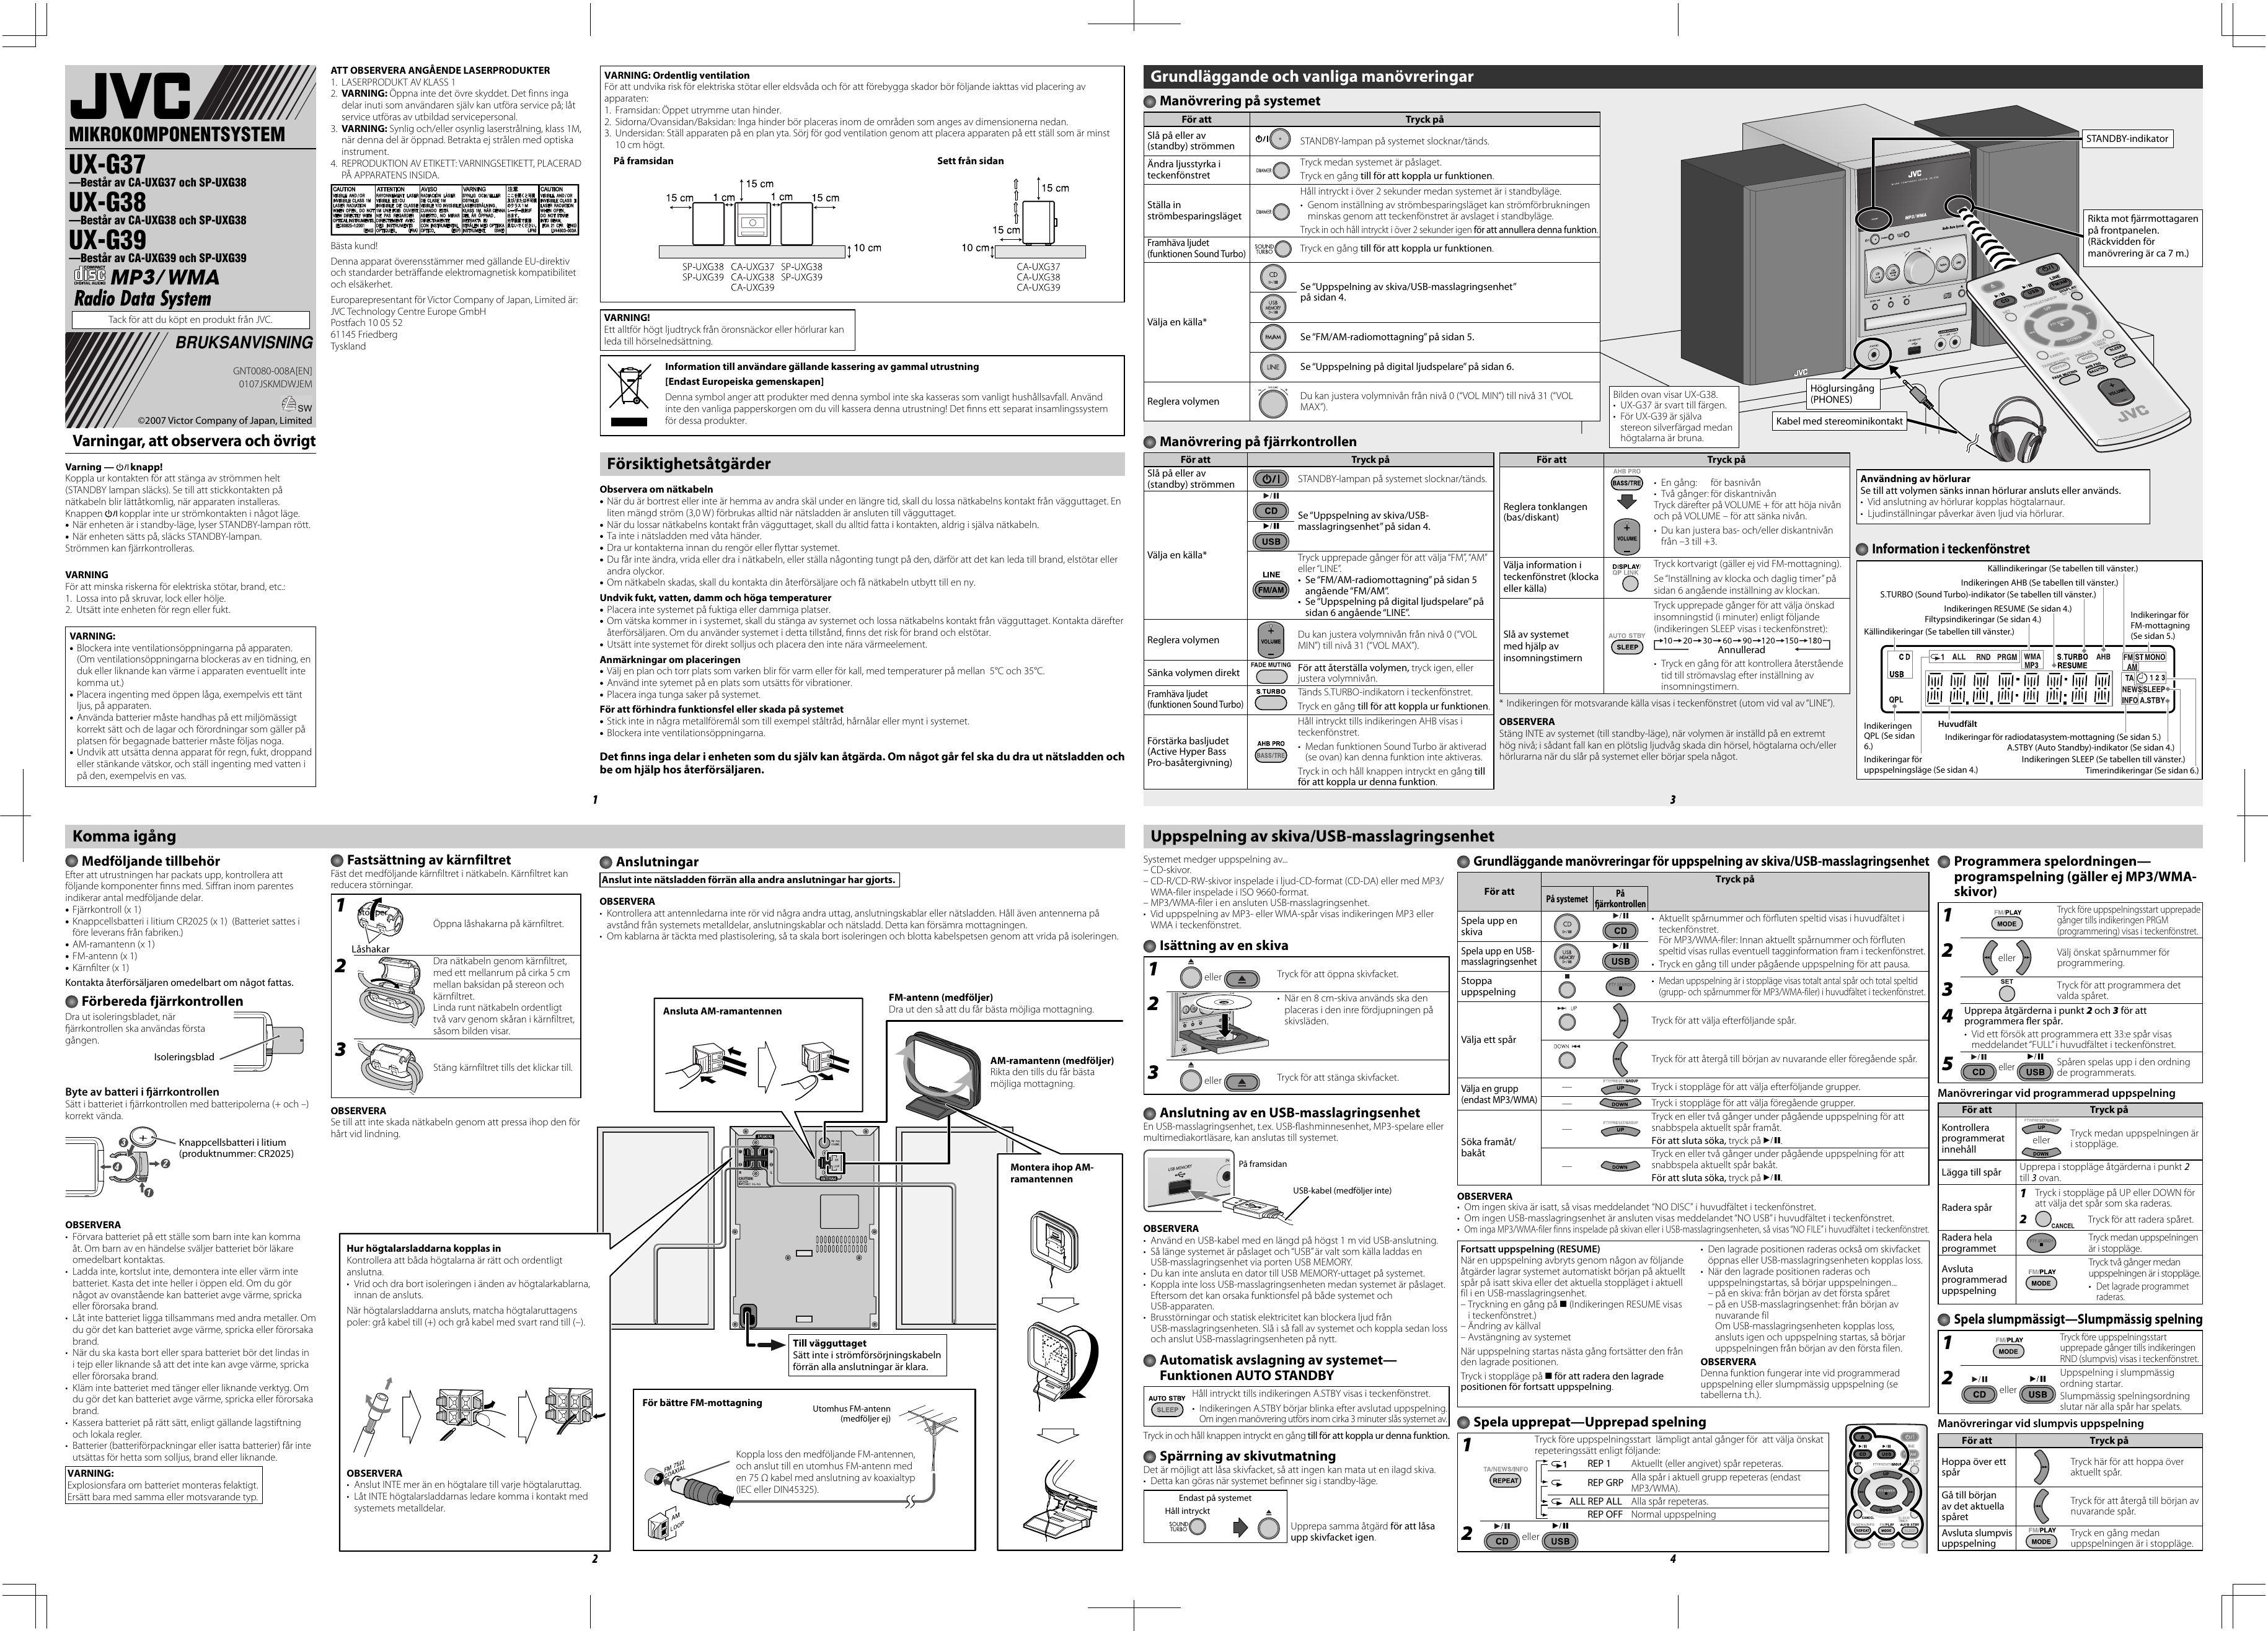 Page 1 of 2 - JVC UX-G39EN UX-G37/UX-G38/UX-G39 User Manual GNT0080-008A